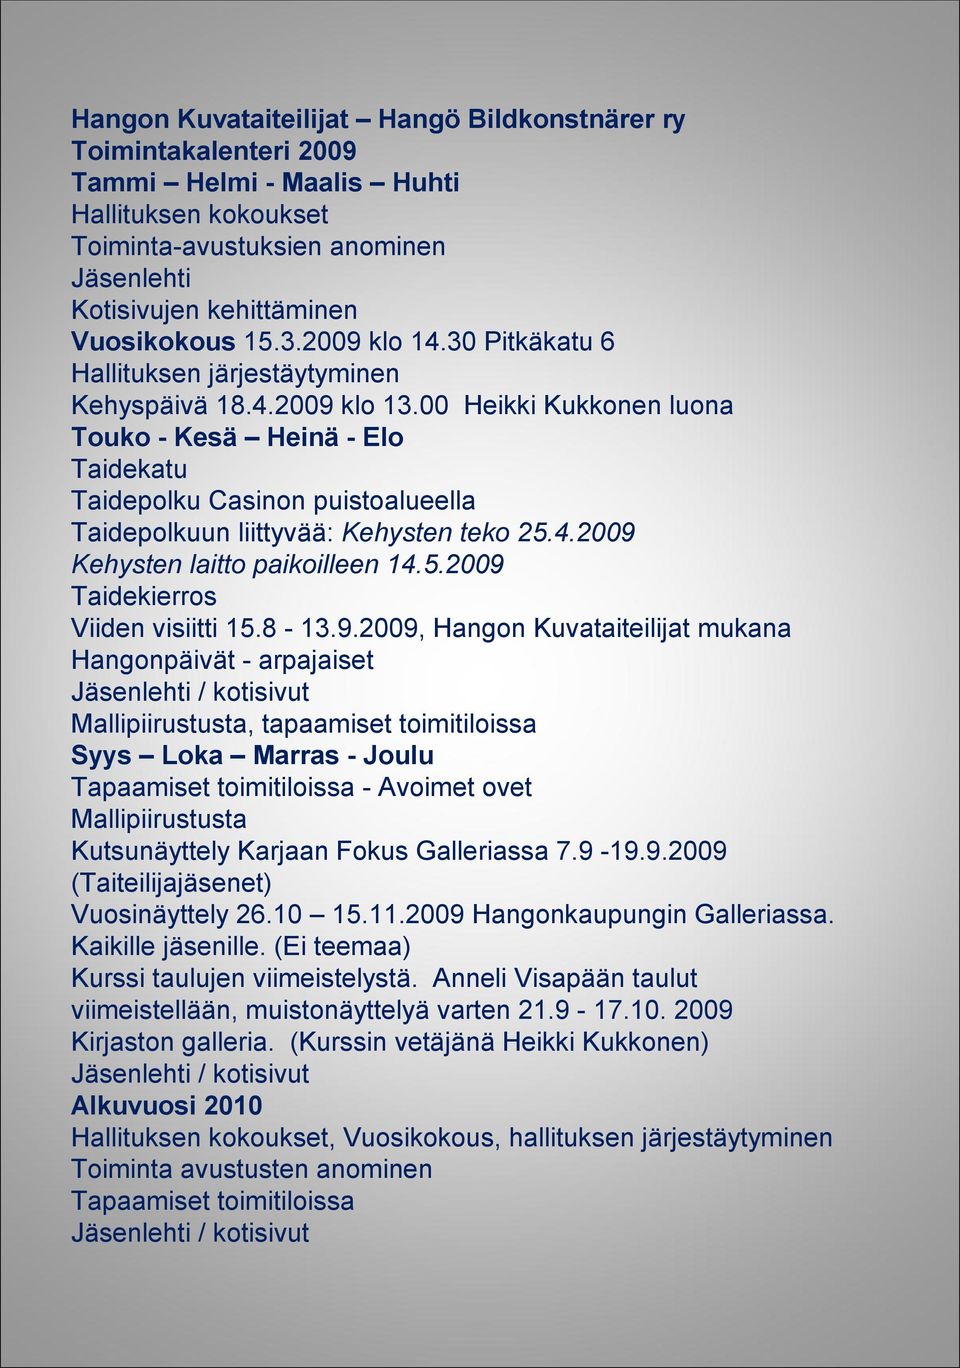 00 Heikki Kukkonen luona Touko - Kesä Heinä - Elo Taidekatu Taidepolku Casinon puistoalueella Taidepolkuun liittyvää: Kehysten teko 25.4.2009 Kehysten laitto paikoilleen 14.5.2009 Taidekierros Viiden visiitti 15.